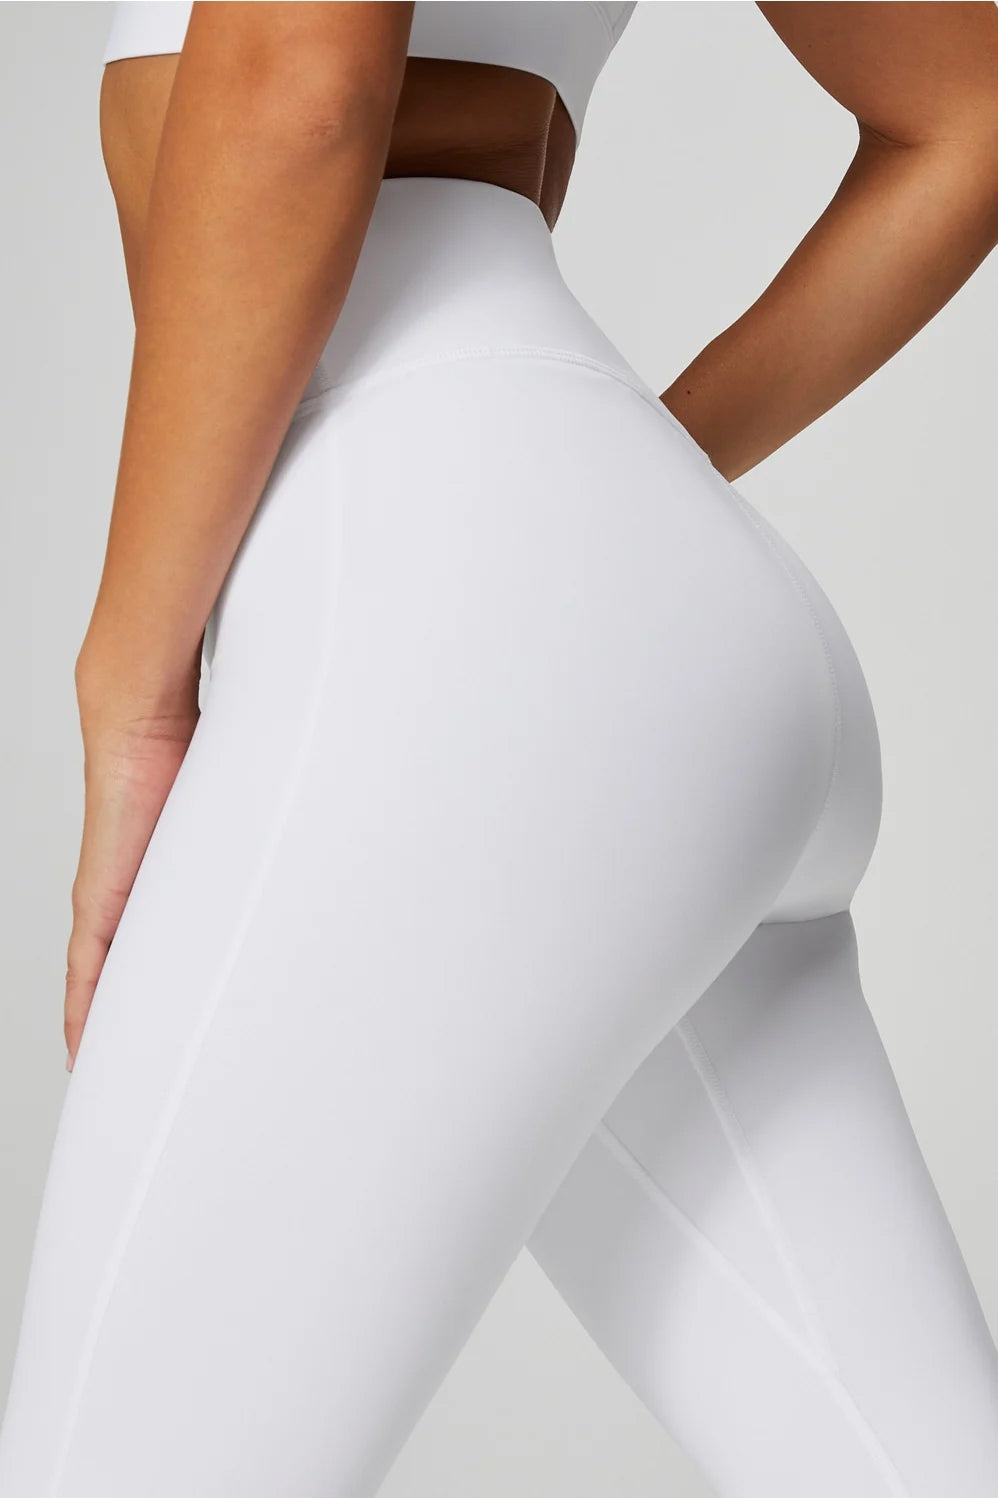 Neue Supply Co. Women's Leggings in White